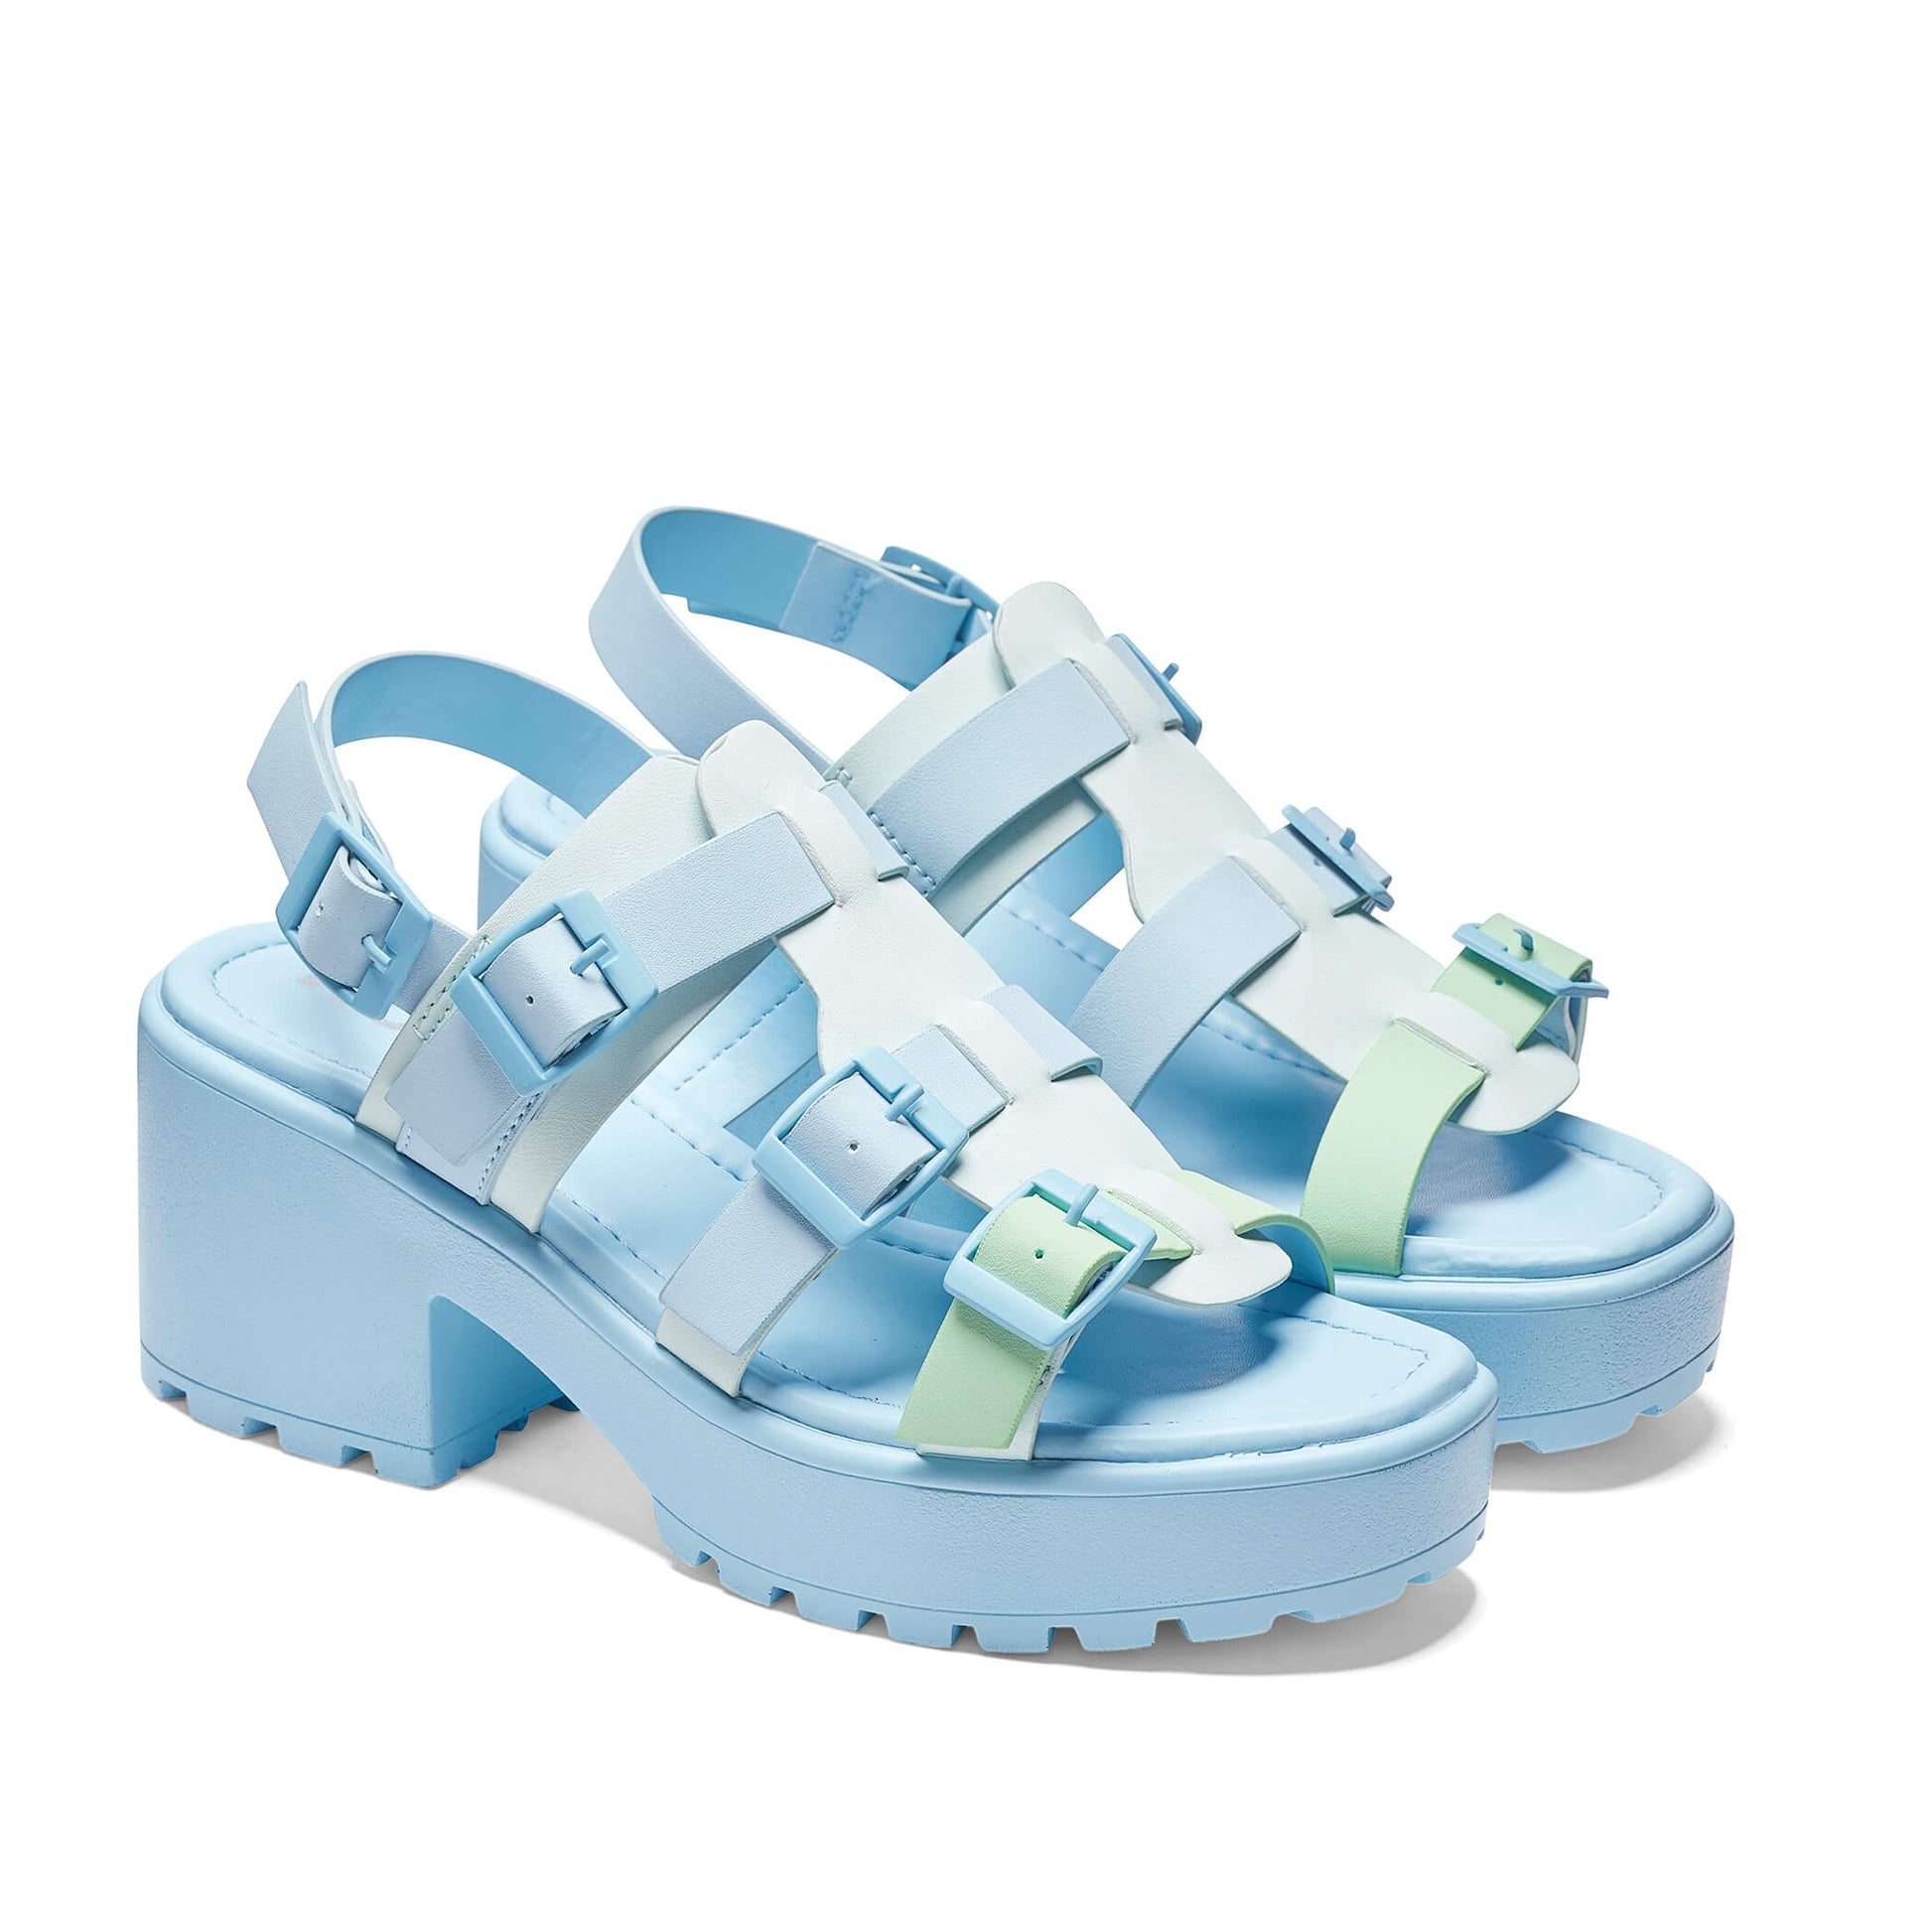 Sugar Season Chunky Buckle Sandals - Blue - Sandals - KOI Footwear - Blue - Three-Quarter View